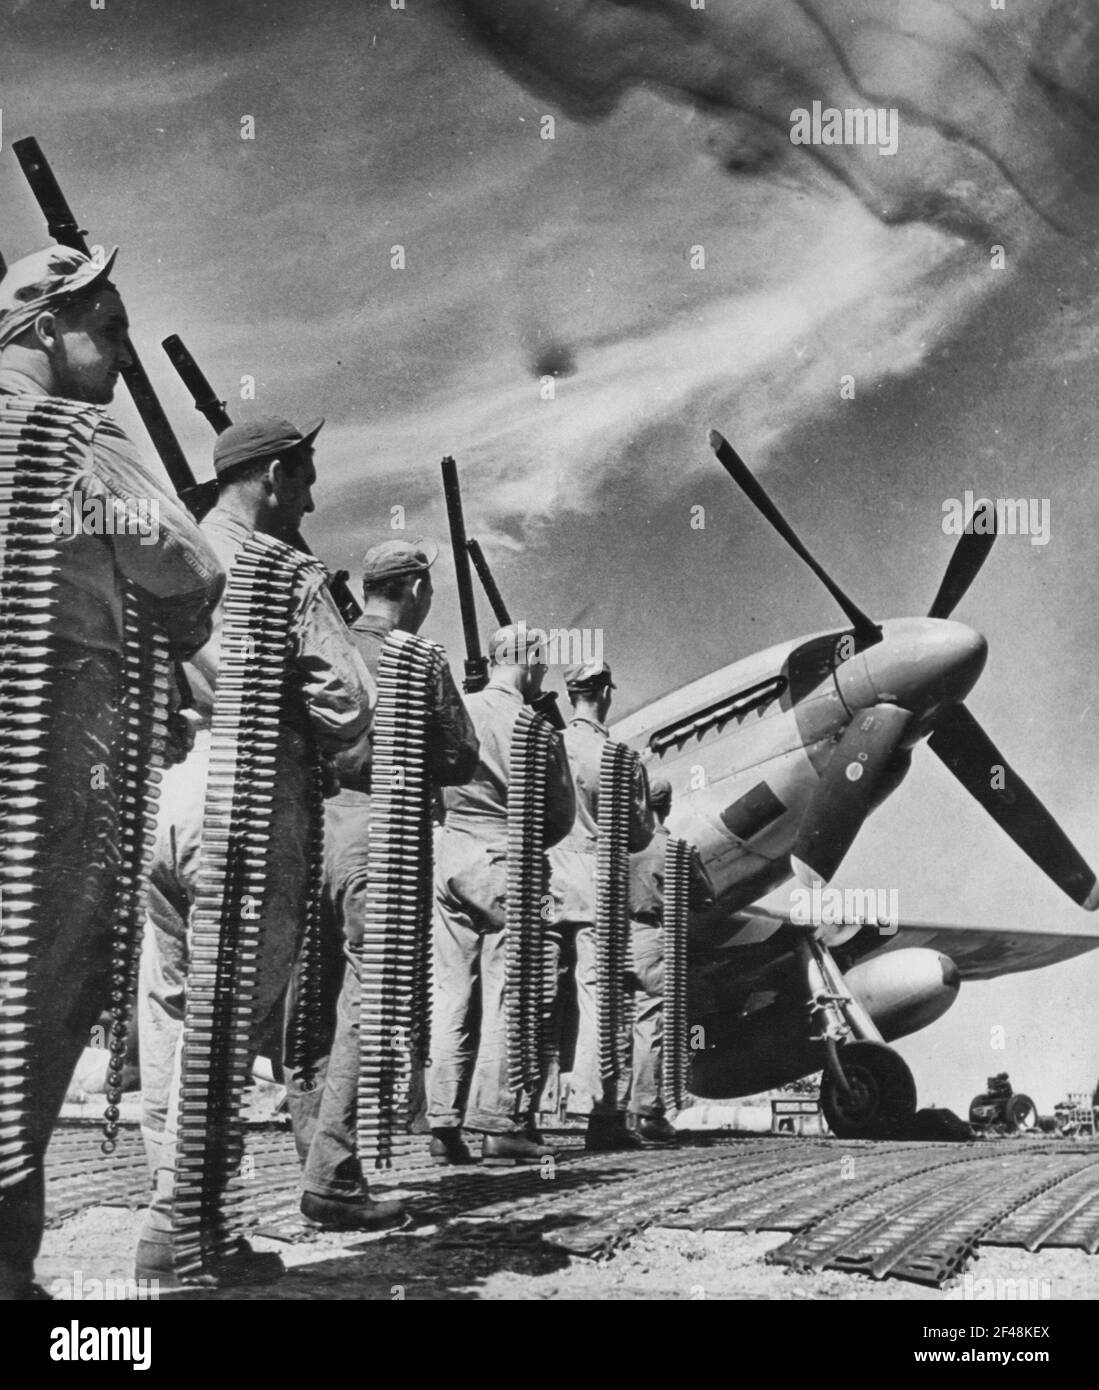 PUISSANCE DE FEU DU CHASSEUR P-51 MUSTANG. Il s'agit des six mitrailleuses de calibre 0,50 utilisées dans les nouveaux combattants Mustang de la 8e Armée de l'Air des États-Unis P-51. Les courroies de cartouches transportées représentent la quantité utilisée par un seul pistolet sur un vol Banque D'Images